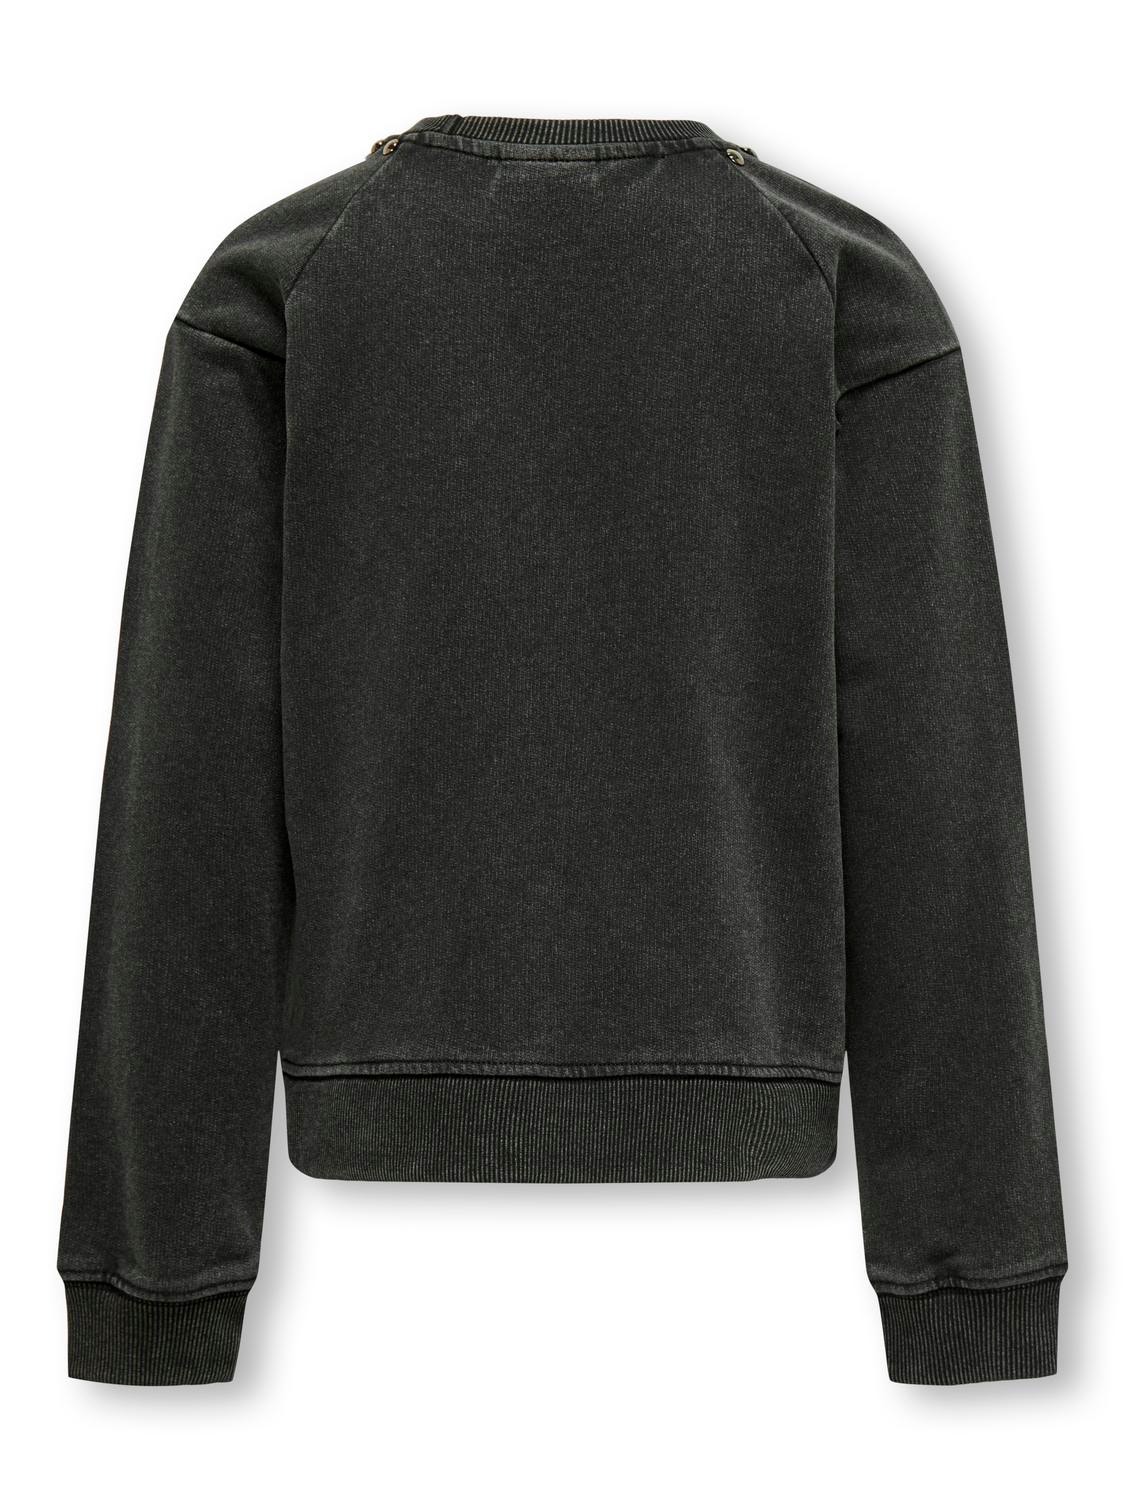 ONLY Regular Fit Round Neck Sweatshirts -Black - 15320273